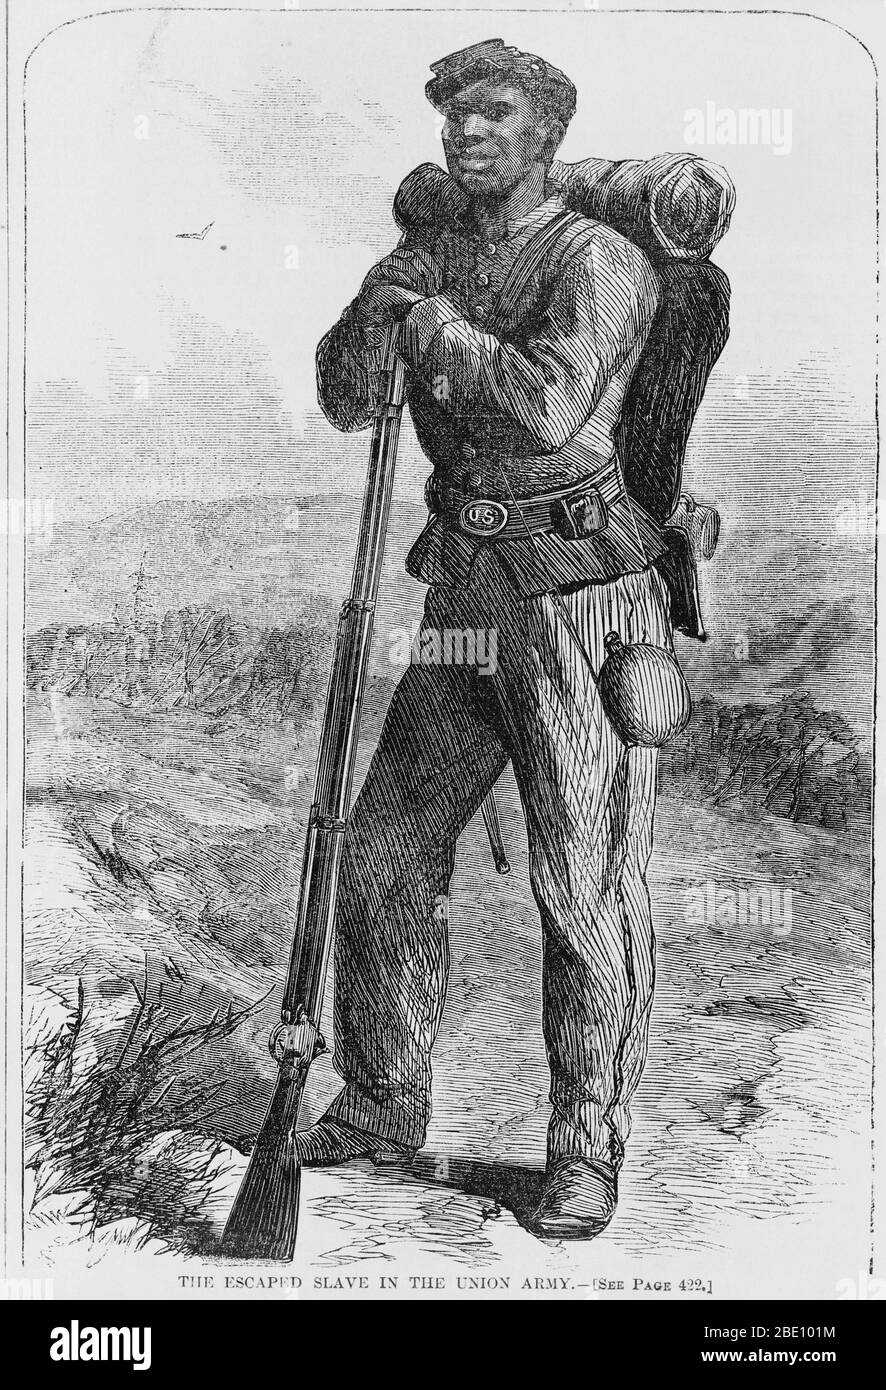 Gravure en bois d'un esclave échappé qui a rejoint l'armée de l'Union dans la guerre civile américaine. Les soldats noirs "fugee", esclaves furatifs, ont été considérés comme "contrebande de guerre" par le nord, dans une déclaration du général Benjamin Butler en mai 1861. Ils ont combattu avec les troupes du Nord. Banque D'Images